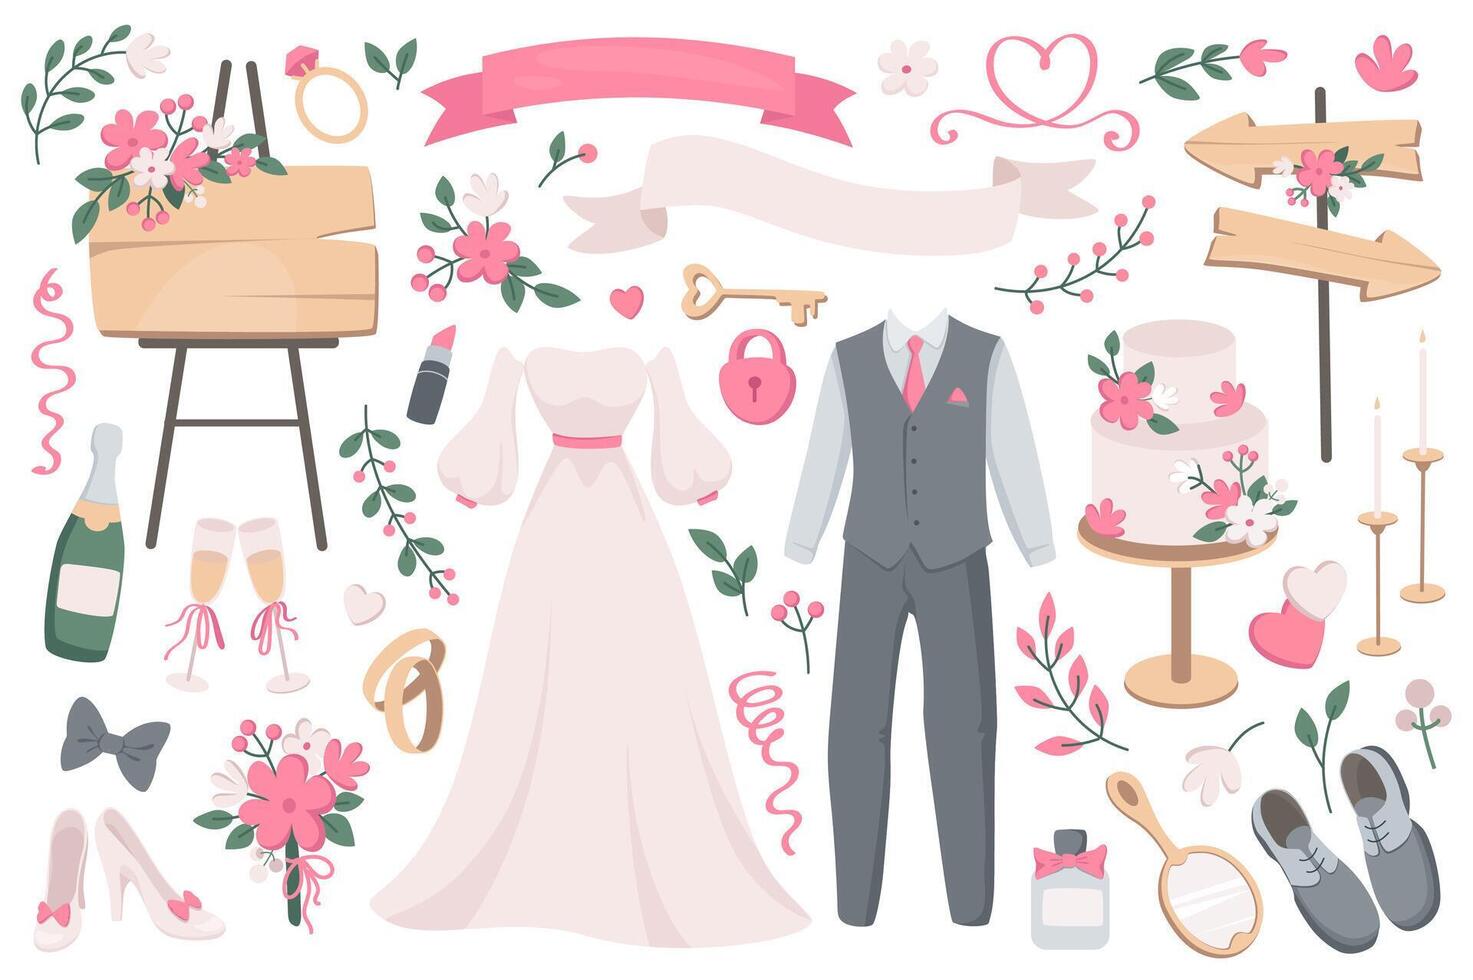 bruiloft voorwerpen mega reeks in grafisch vlak ontwerp. bundel elementen van bruid jurk, bruidegom pak, leeg linten, bloemen boeket, Champagne, bril, ringen, ander. vector illustratie geïsoleerd stickers